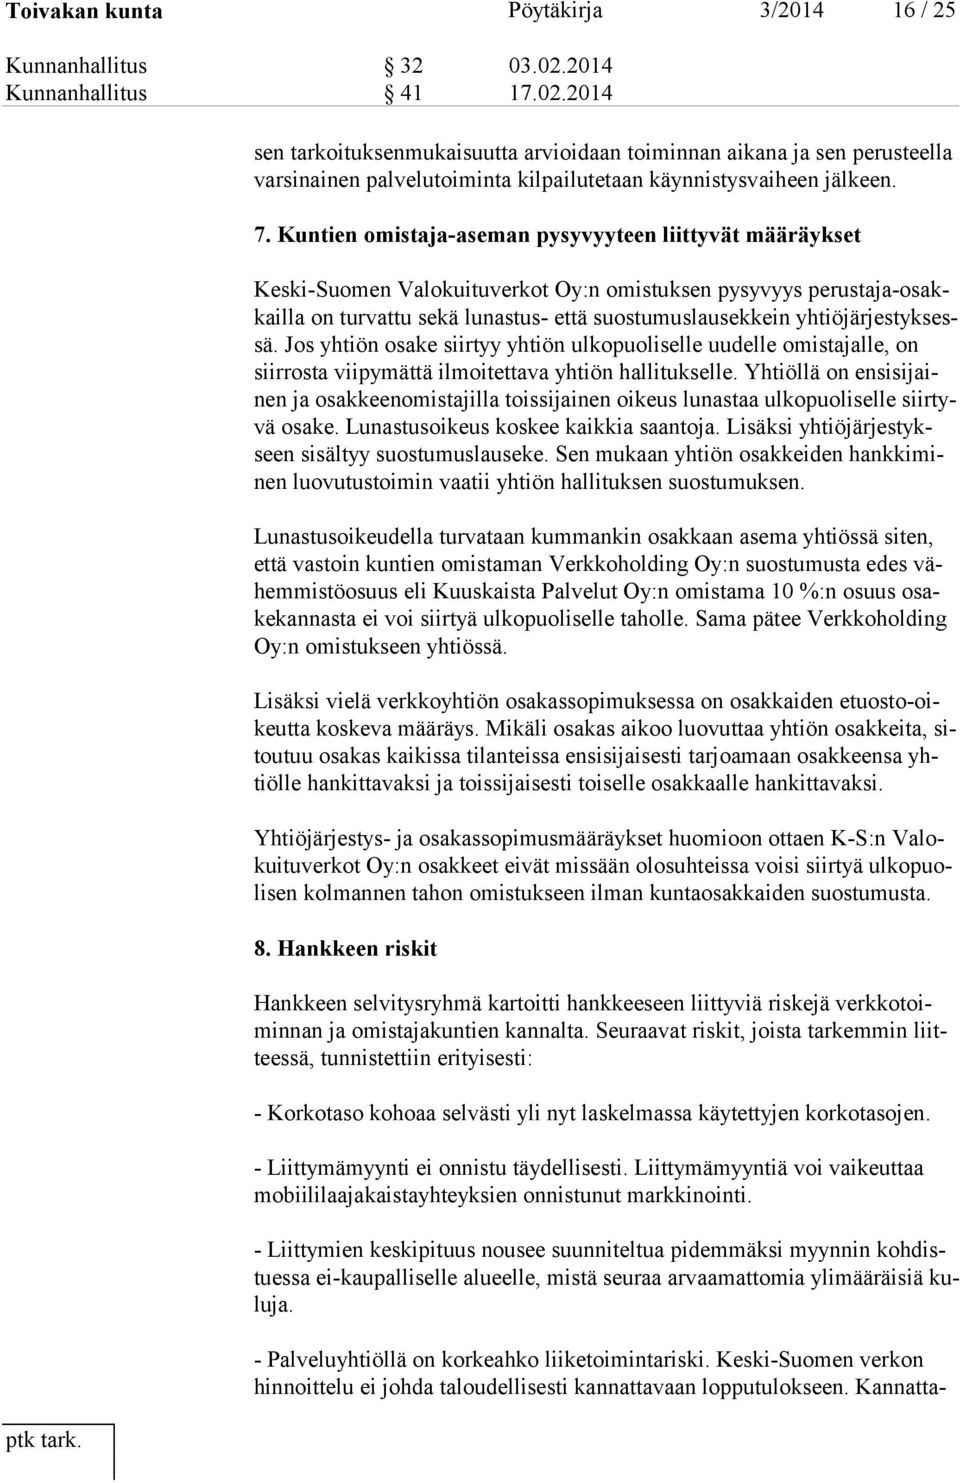 Kuntien omistaja-aseman pysyvyyteen liittyvät määräykset Keski-Suomen Valokuituverkot Oy:n omistuksen pysyvyys perustaja-osakkailla on turvattu sekä lunastus- että suostumuslausekkein